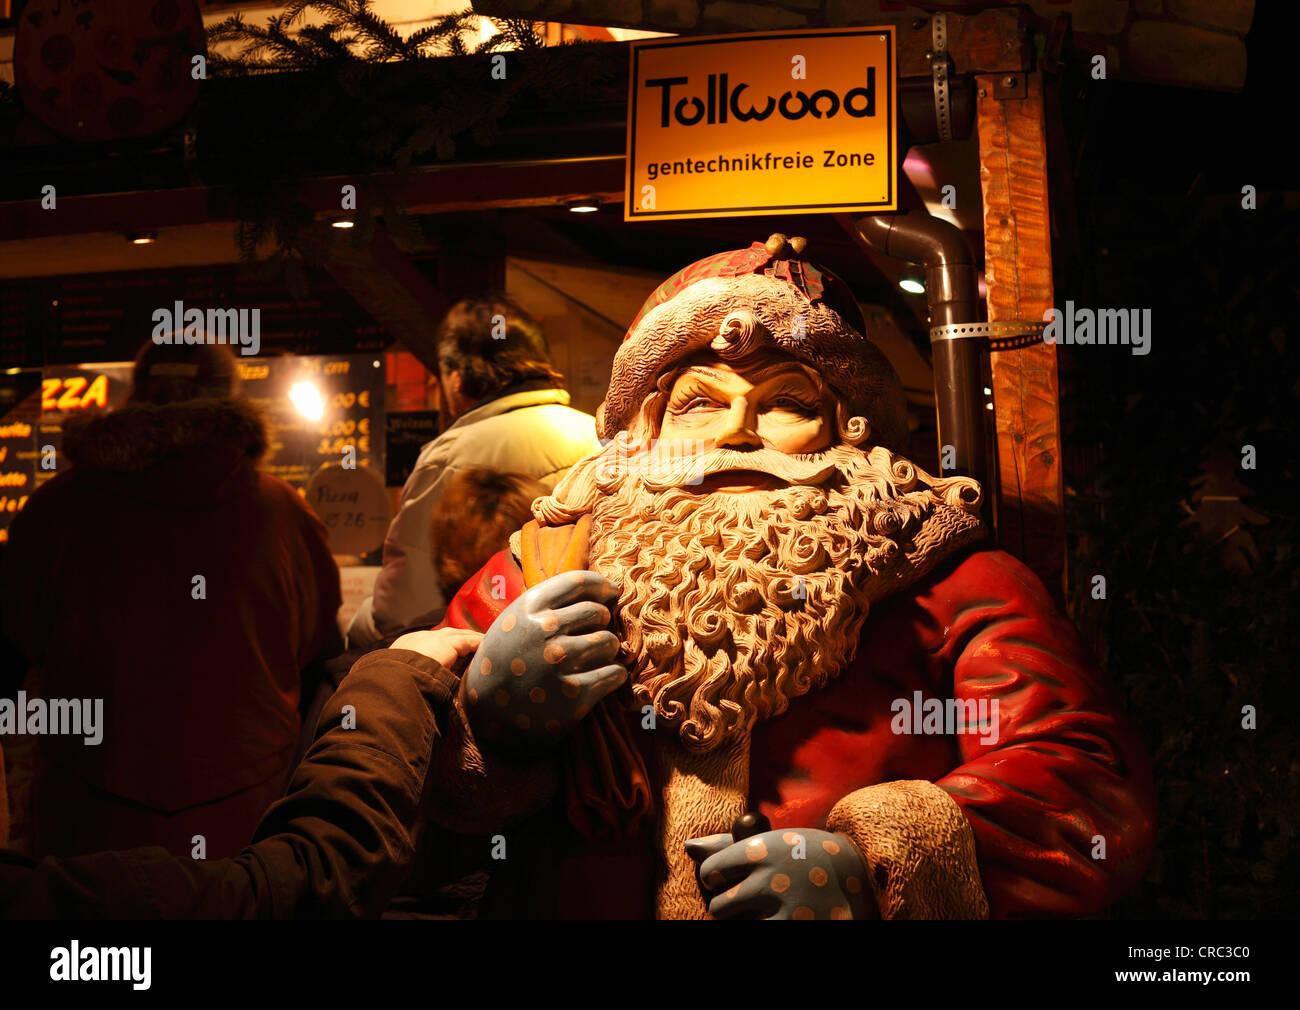 Tollwood winter festival, Babbo Natale e un segno, OGM-free zone, Theresienwiese, Monaco di Baviera, Germania, Europa Foto Stock